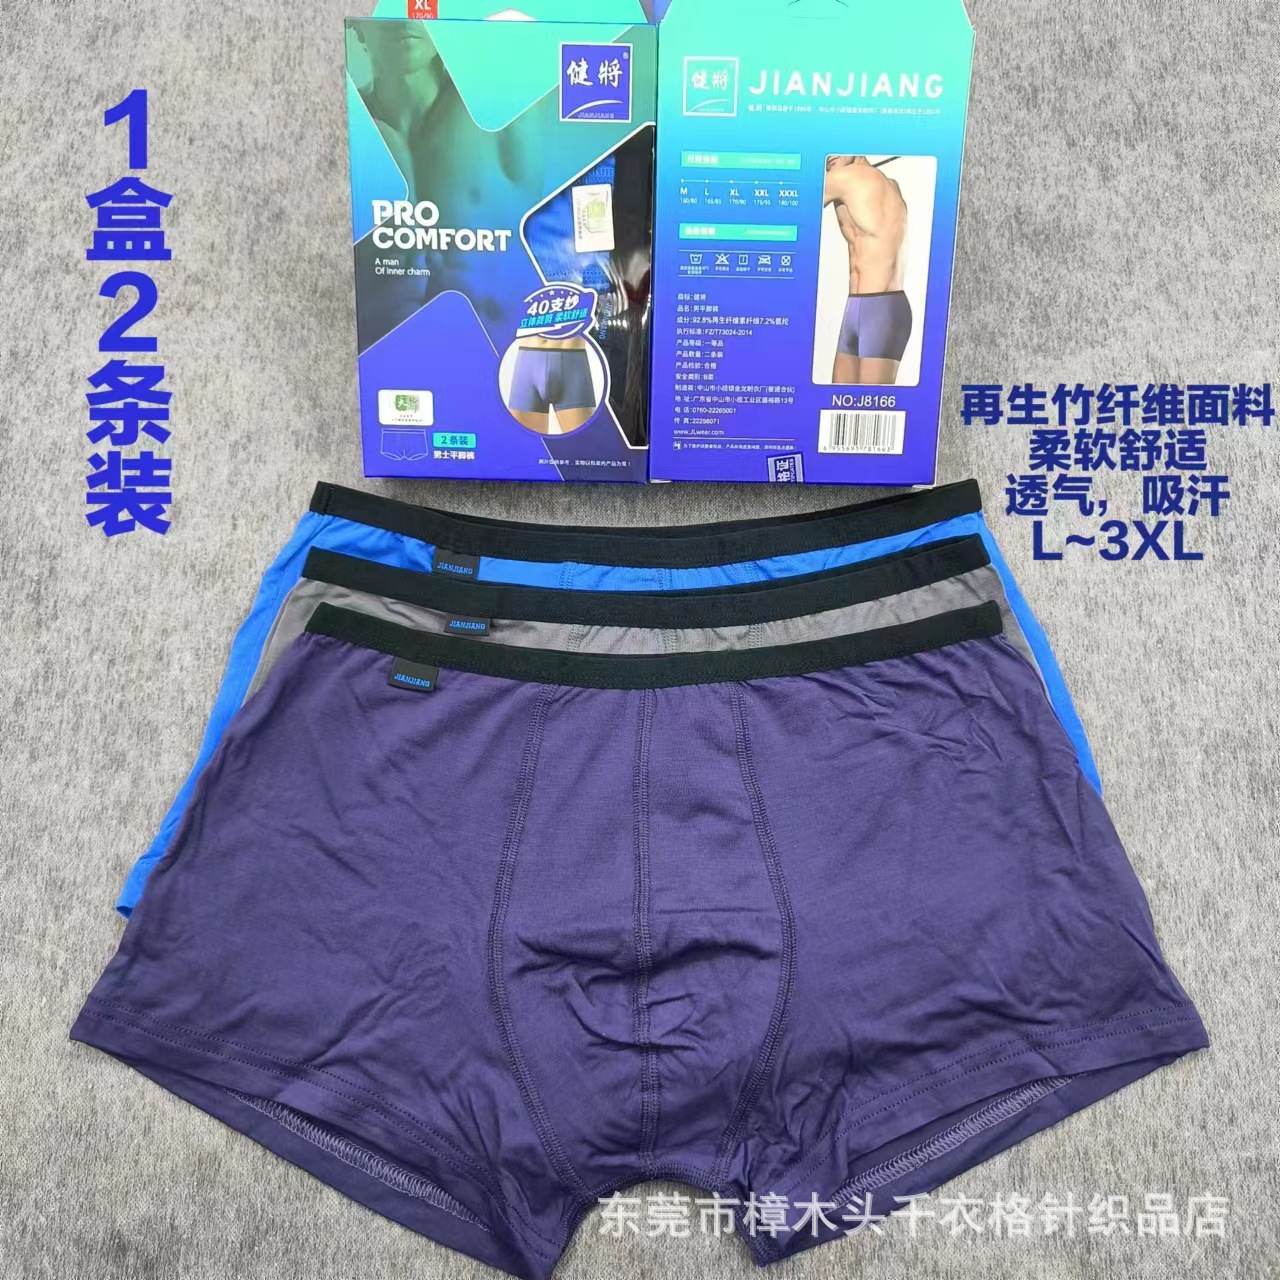 品牌J8166男士内裤2条盒装竹纤维棉透气柔软弹力细窄边平角四角裤